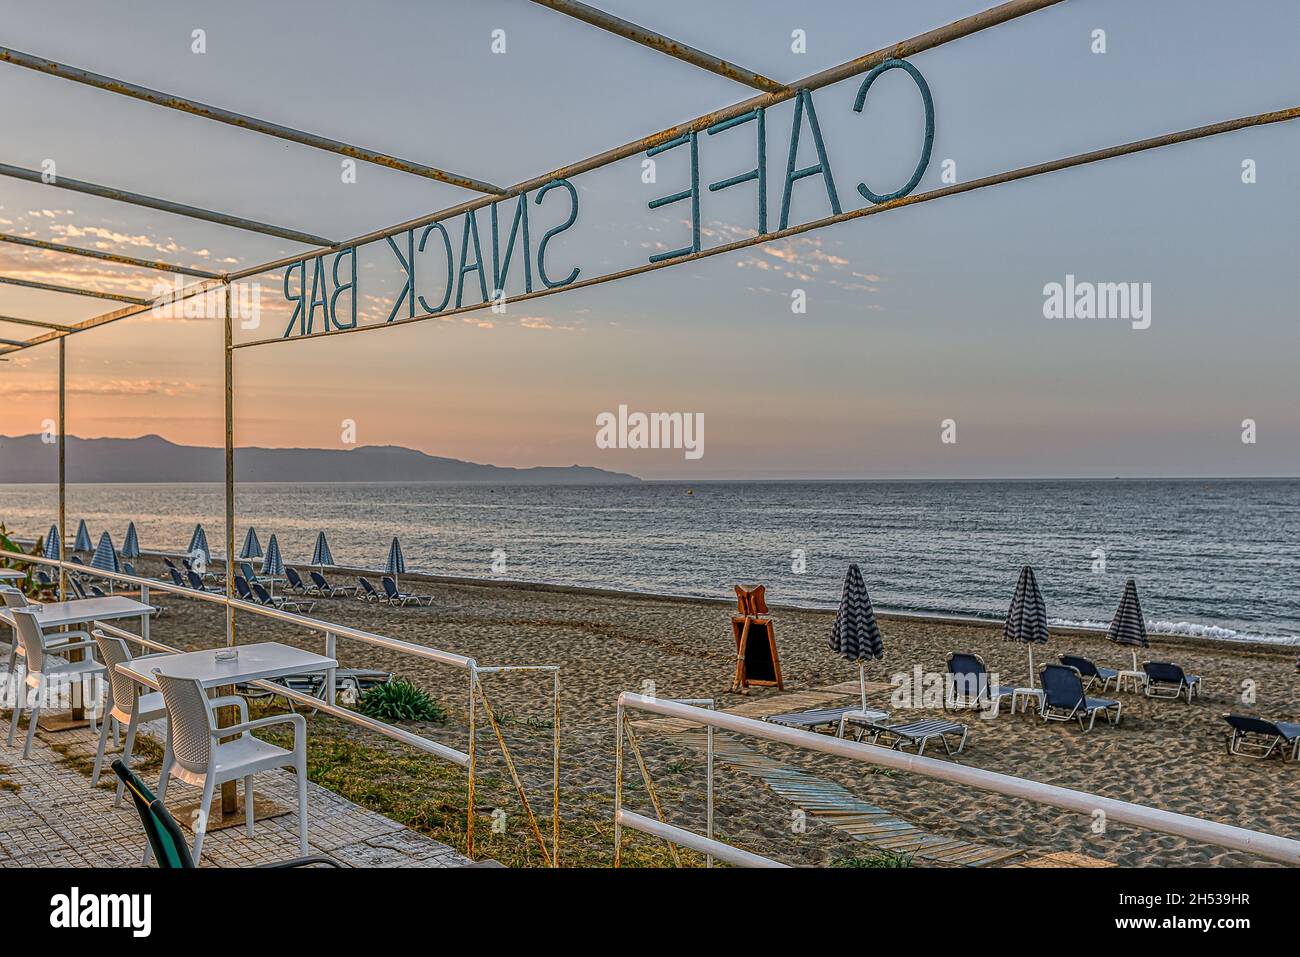 Un snack-bar sans touristes donnant sur la plage et la mer Méditerranée azur, Crète, Grèce, 11 octobre 2021 Banque D'Images